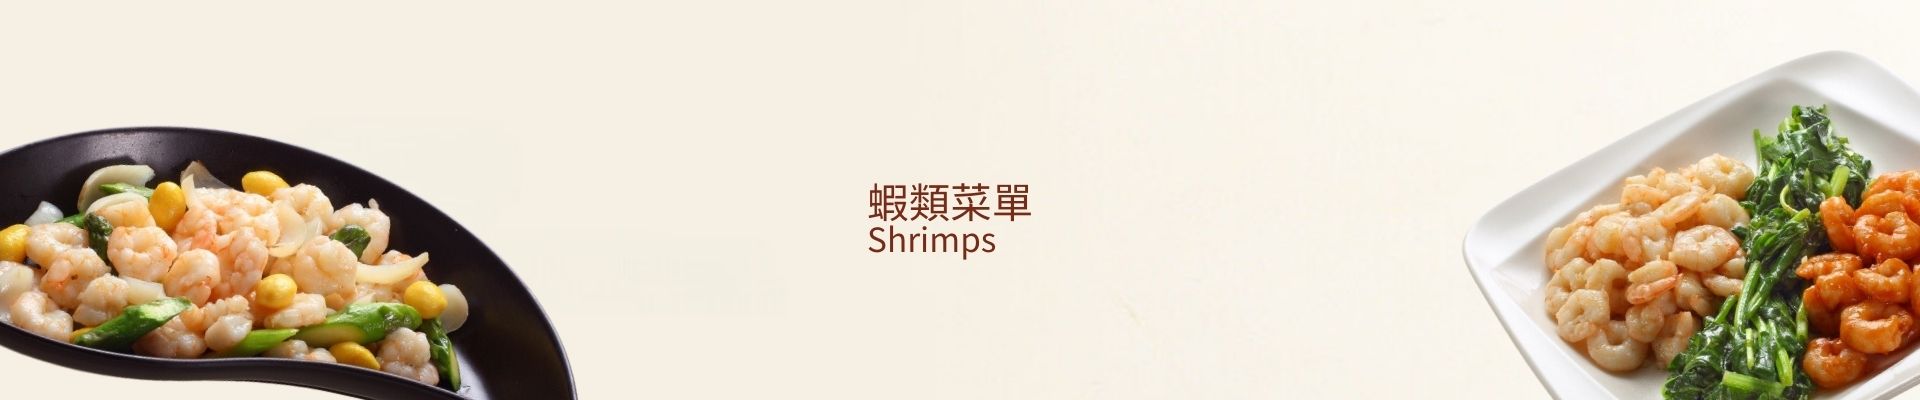 蝦類菜單